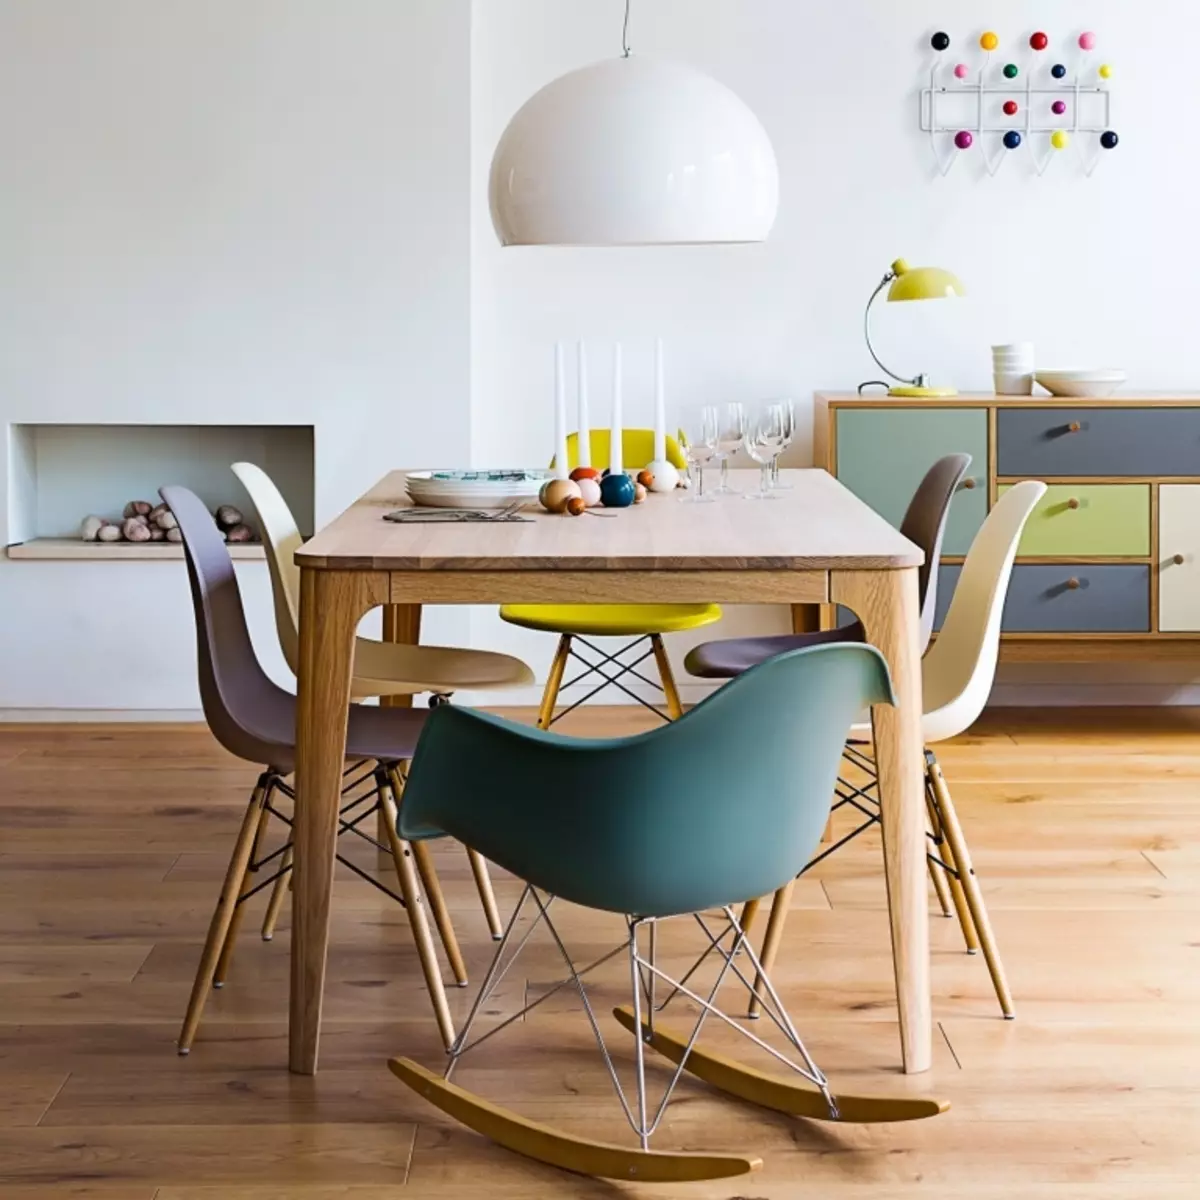 ڈیزائنر باورچی خانے کرسیاں (48 فوٹو): سجیلا اور غیر معمولی باورچی خانے کی کرسیاں، فیشن پلاسٹک اور ویلور ماڈل، دلچسپ ڈیزائن کی مثالیں 21068_4